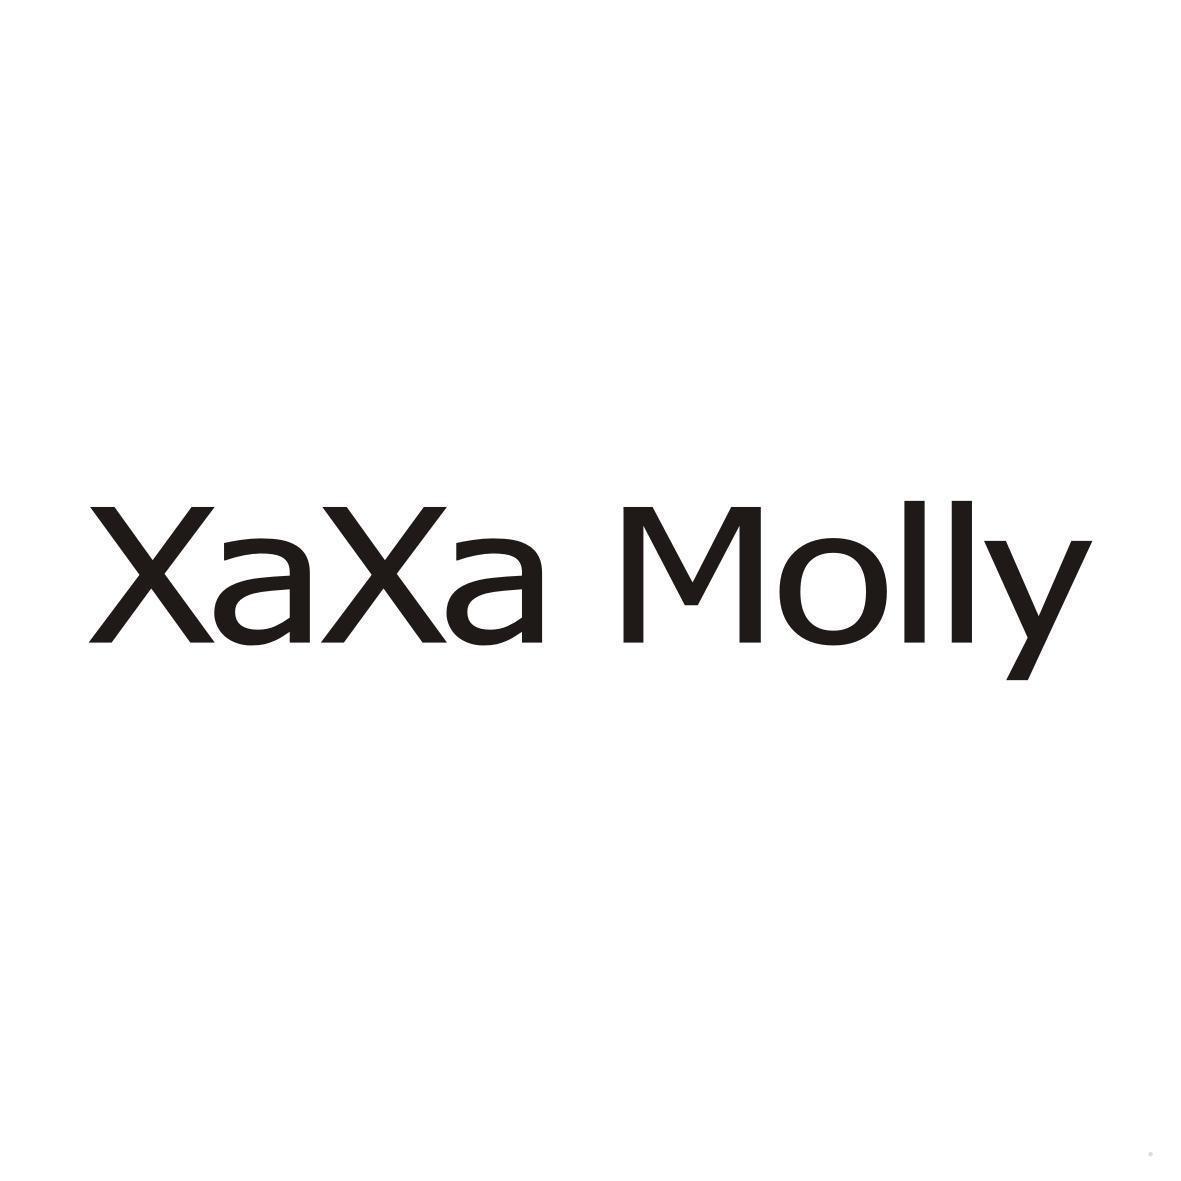 XAXA MOLLY